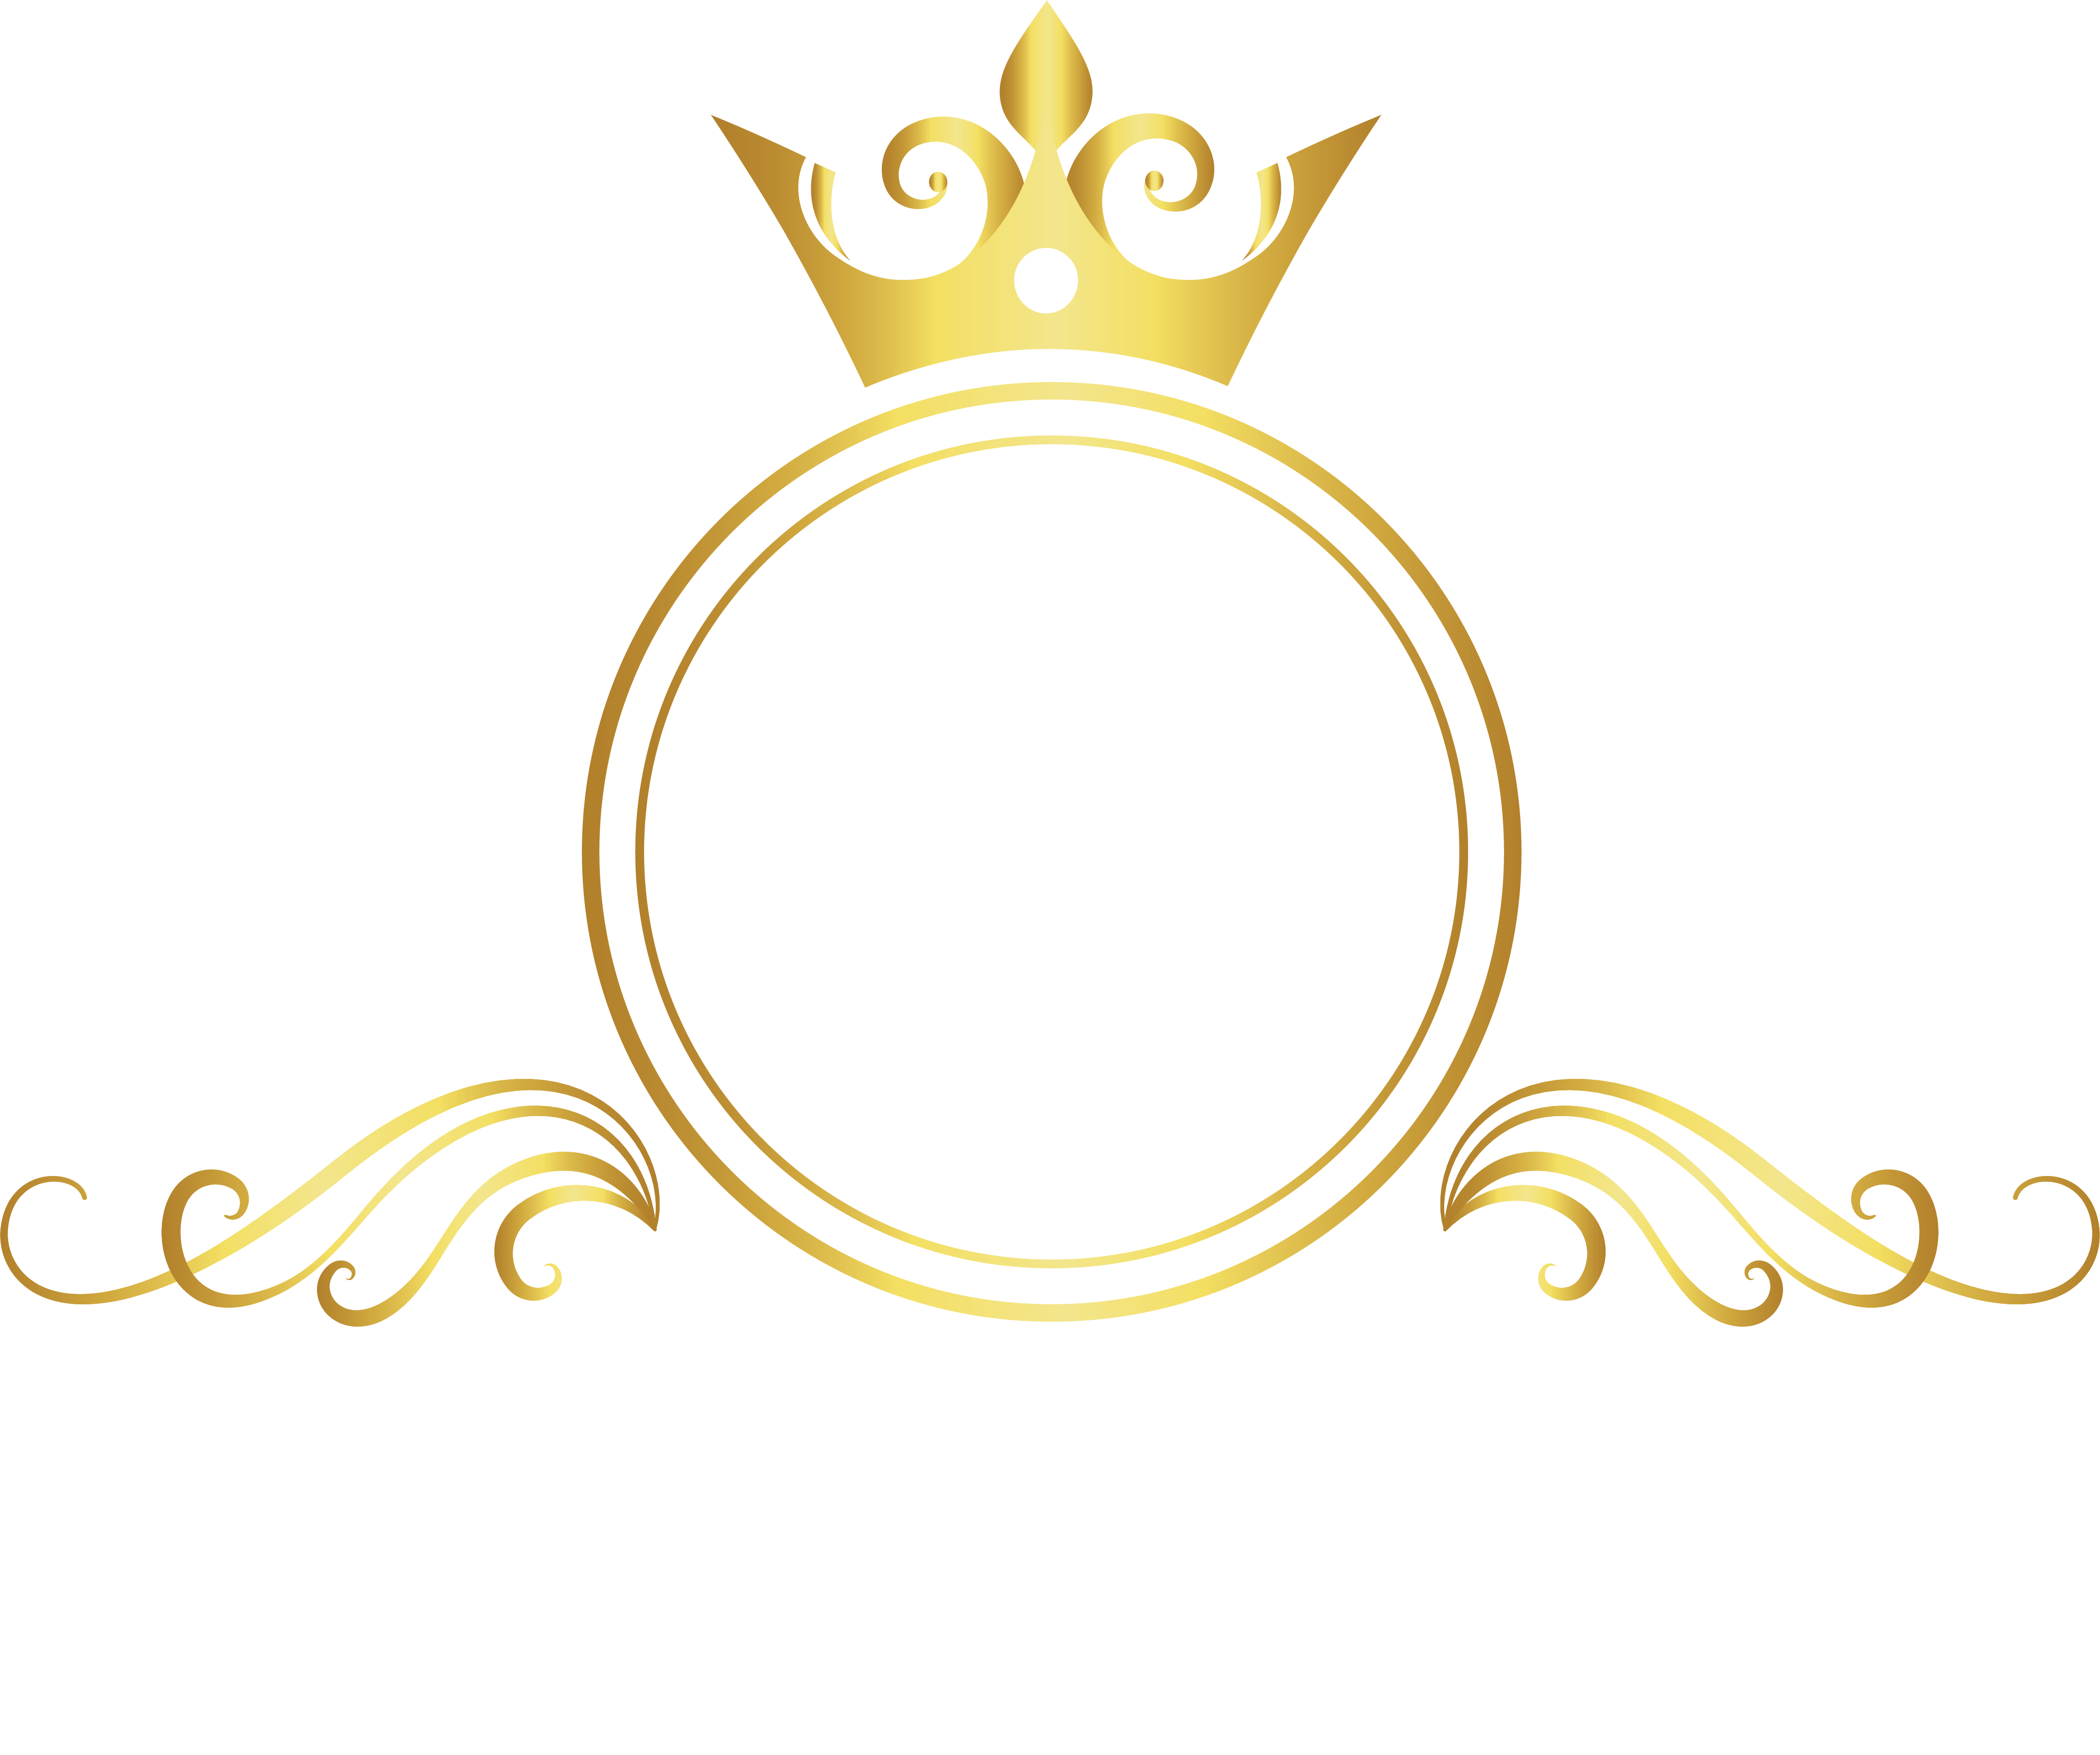 Longines Bay Jewelry (Amoy) Co. Ltd.